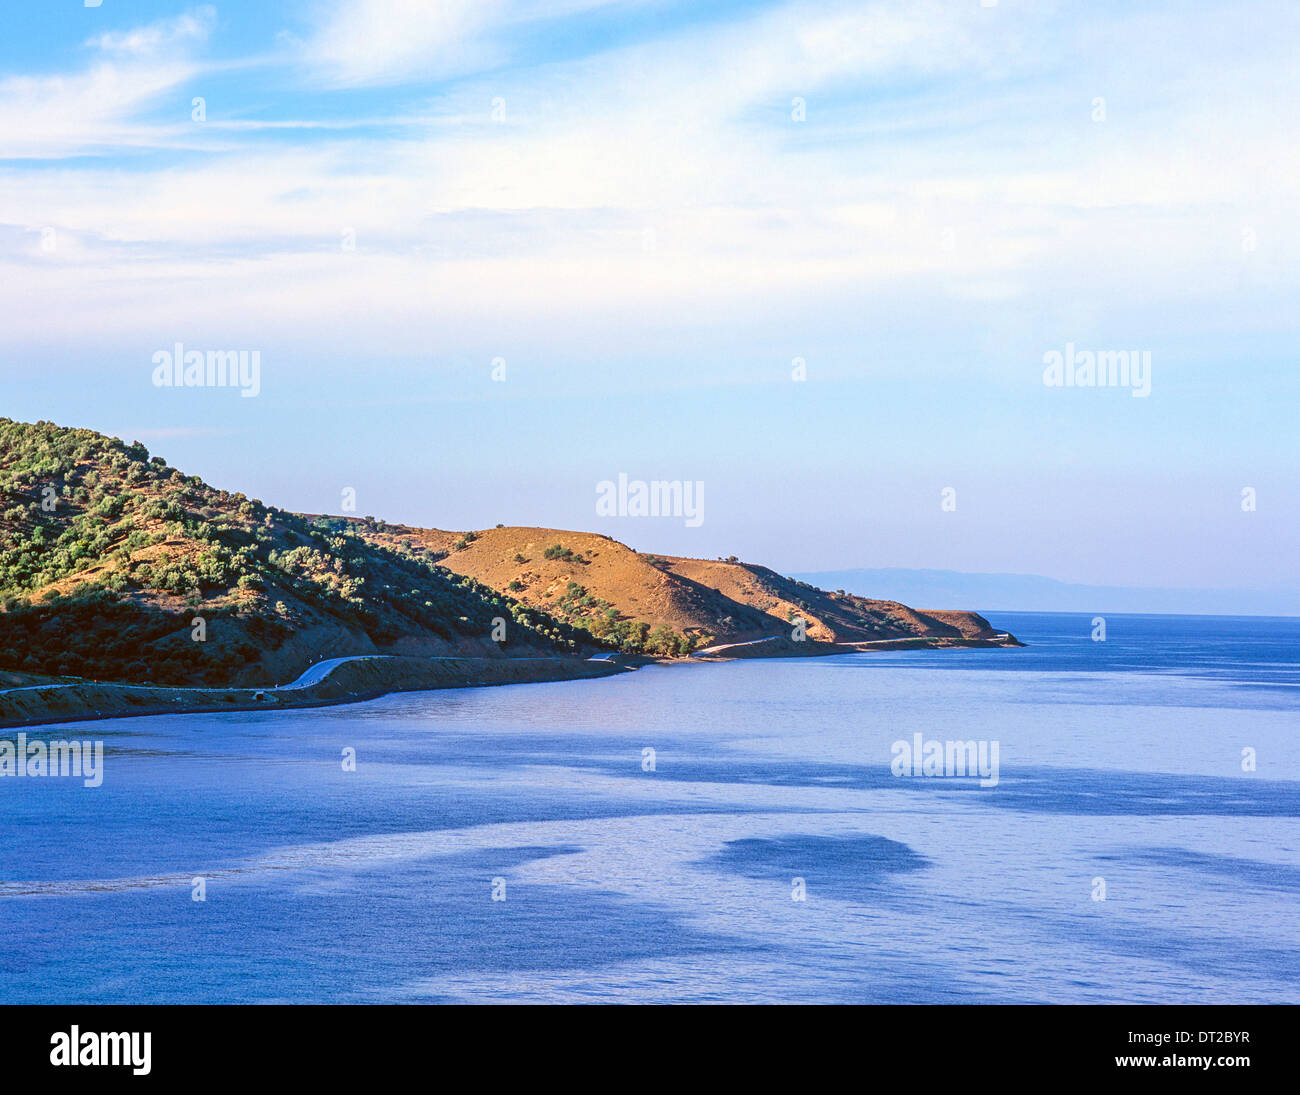 Il litorale Samothraki isole Greche - Grecia Foto Stock